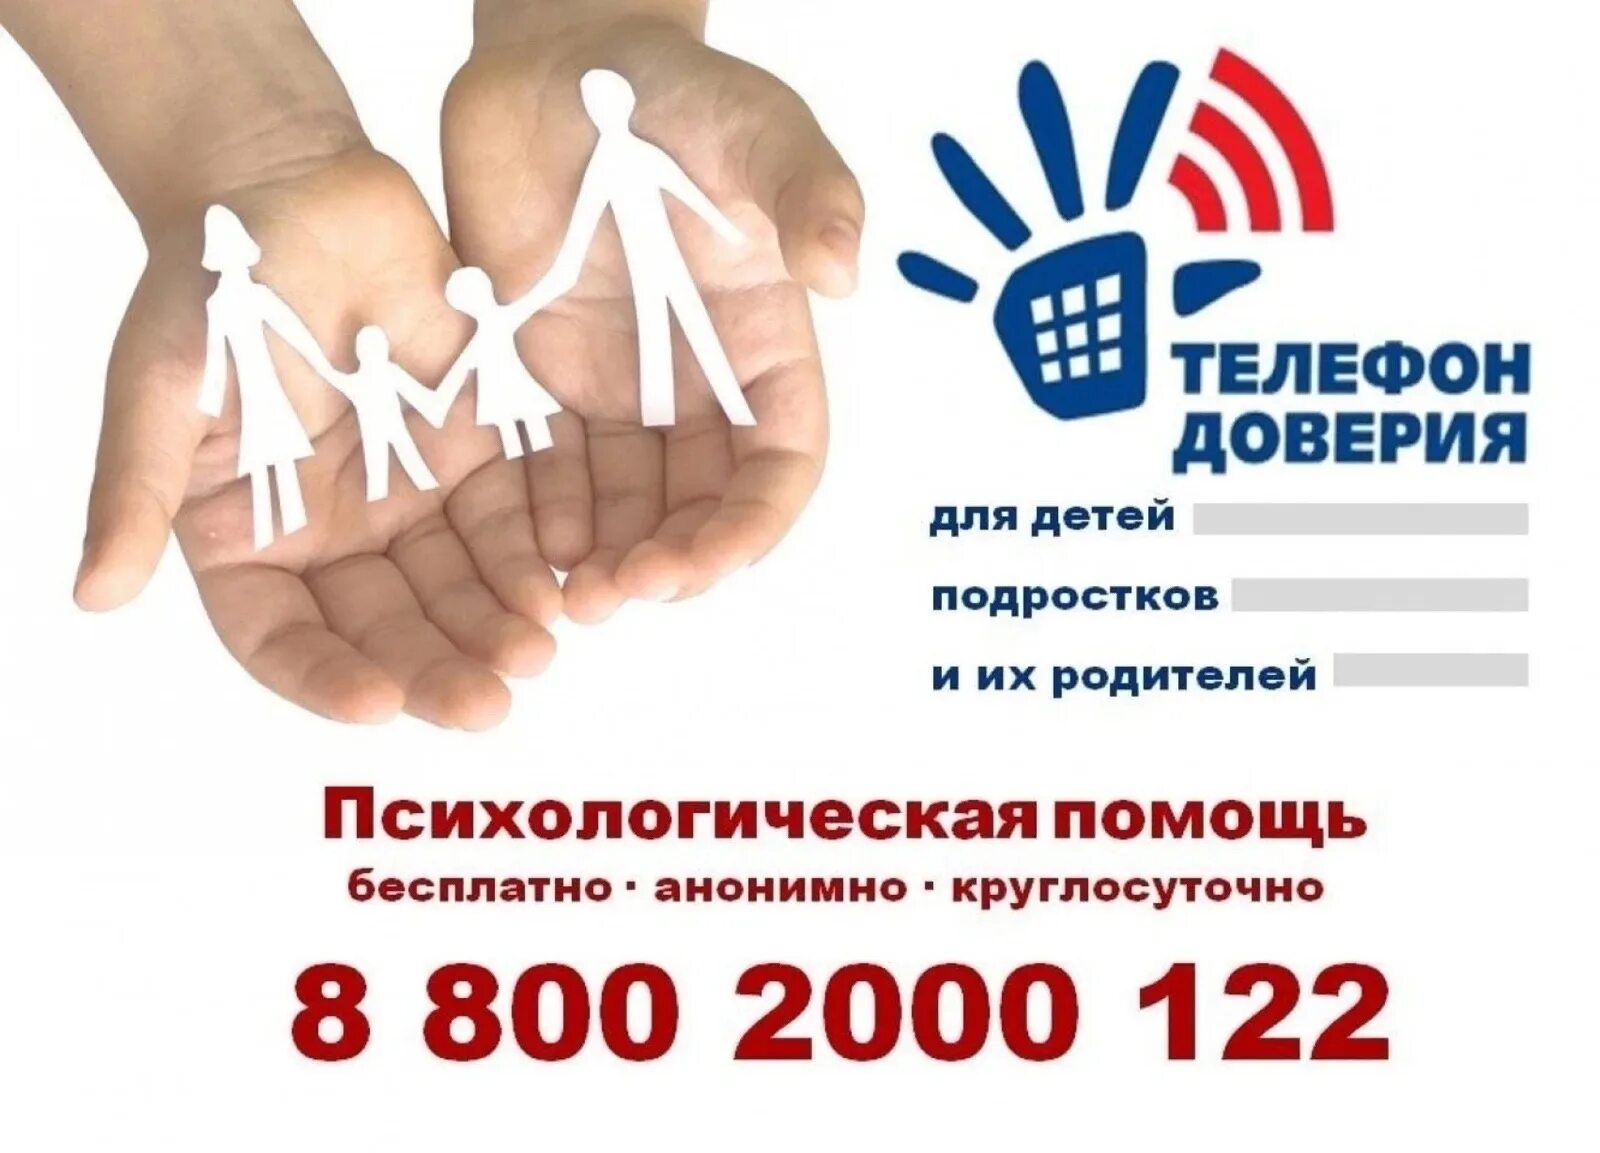 Крым доверие. Детский телефон доверия 8-800-2000-122. Телефон доверия. Телефон доверия для детей. Телефон доверия для детей подростков и их родителей.